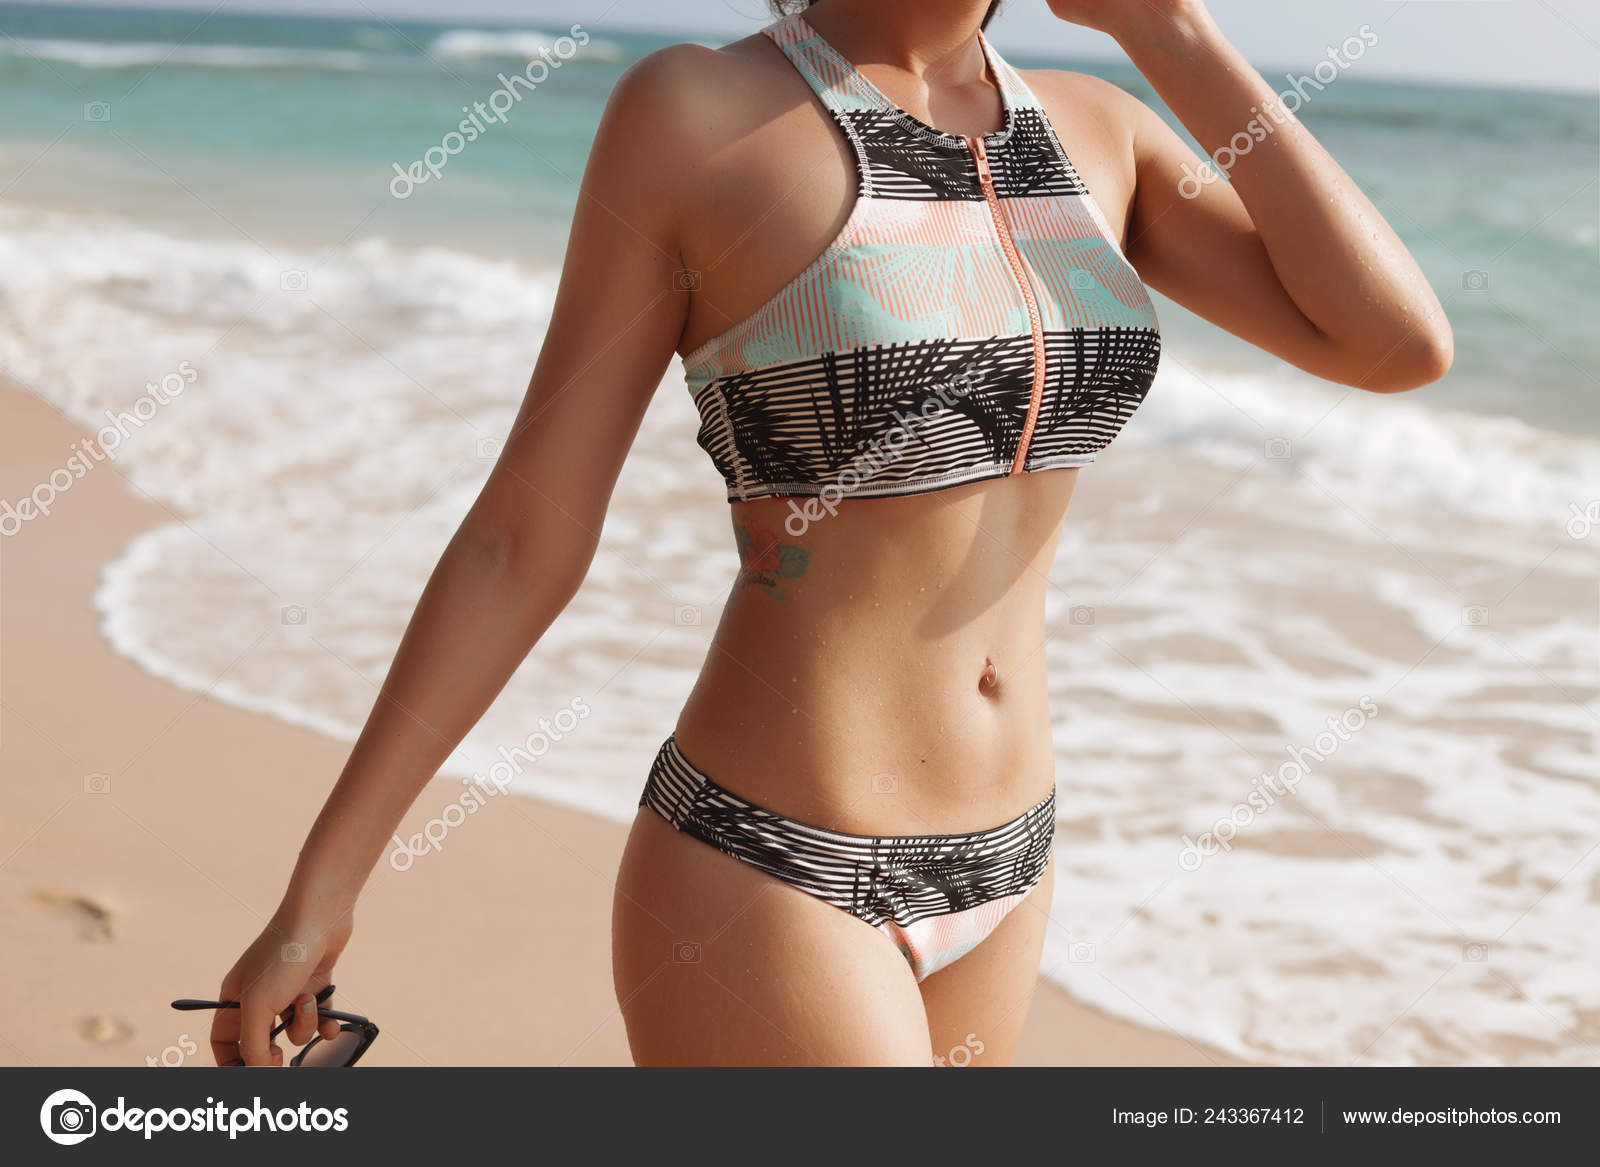 Bikini workout girl waves